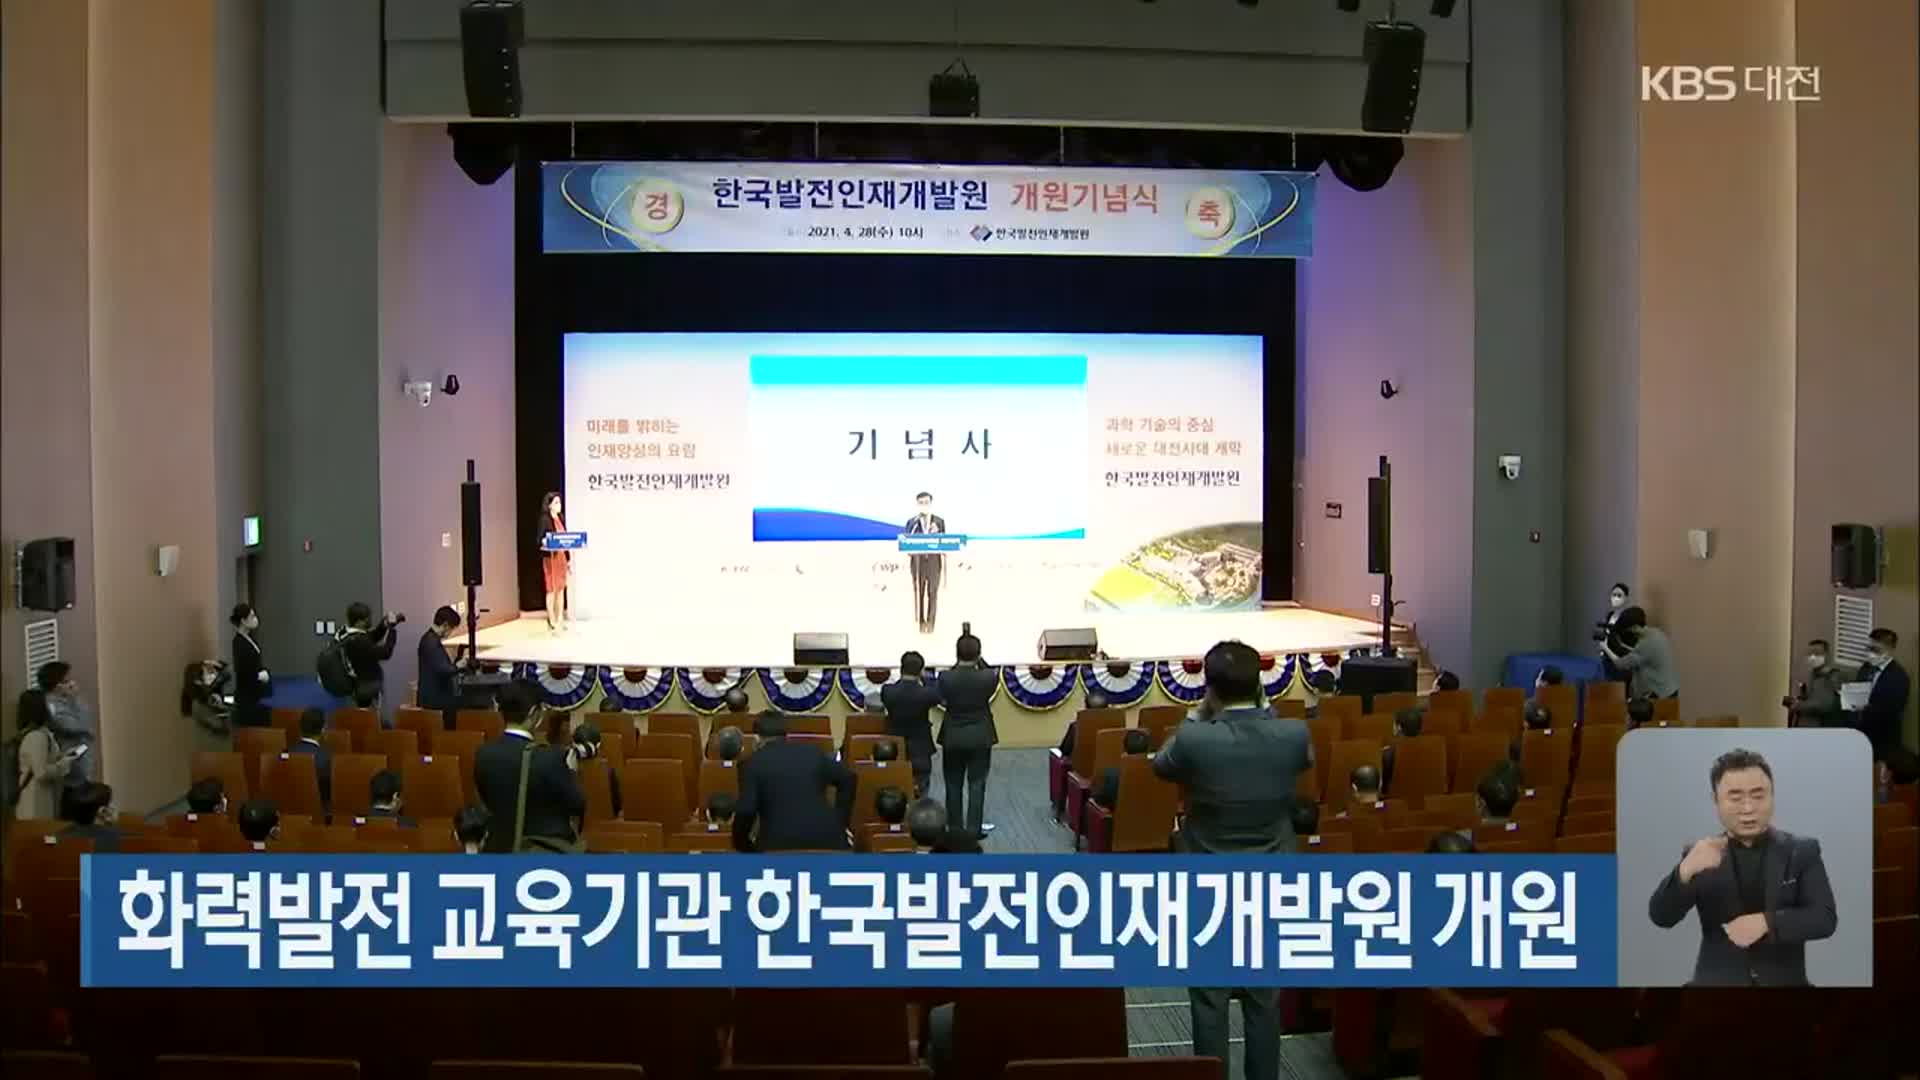 화력발전 교육기관 한국발전인재개발원 개원